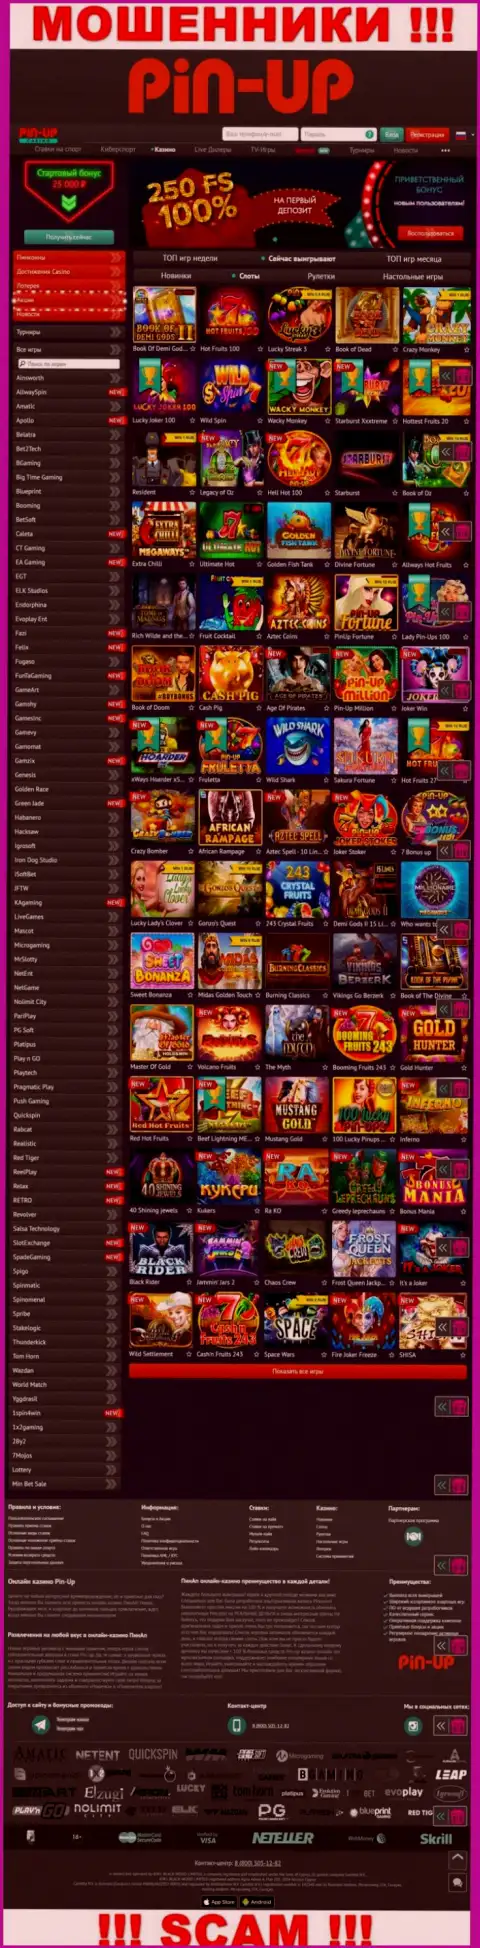 Pin-Up Casino - это официальный сайт аферистов PinUp Casino